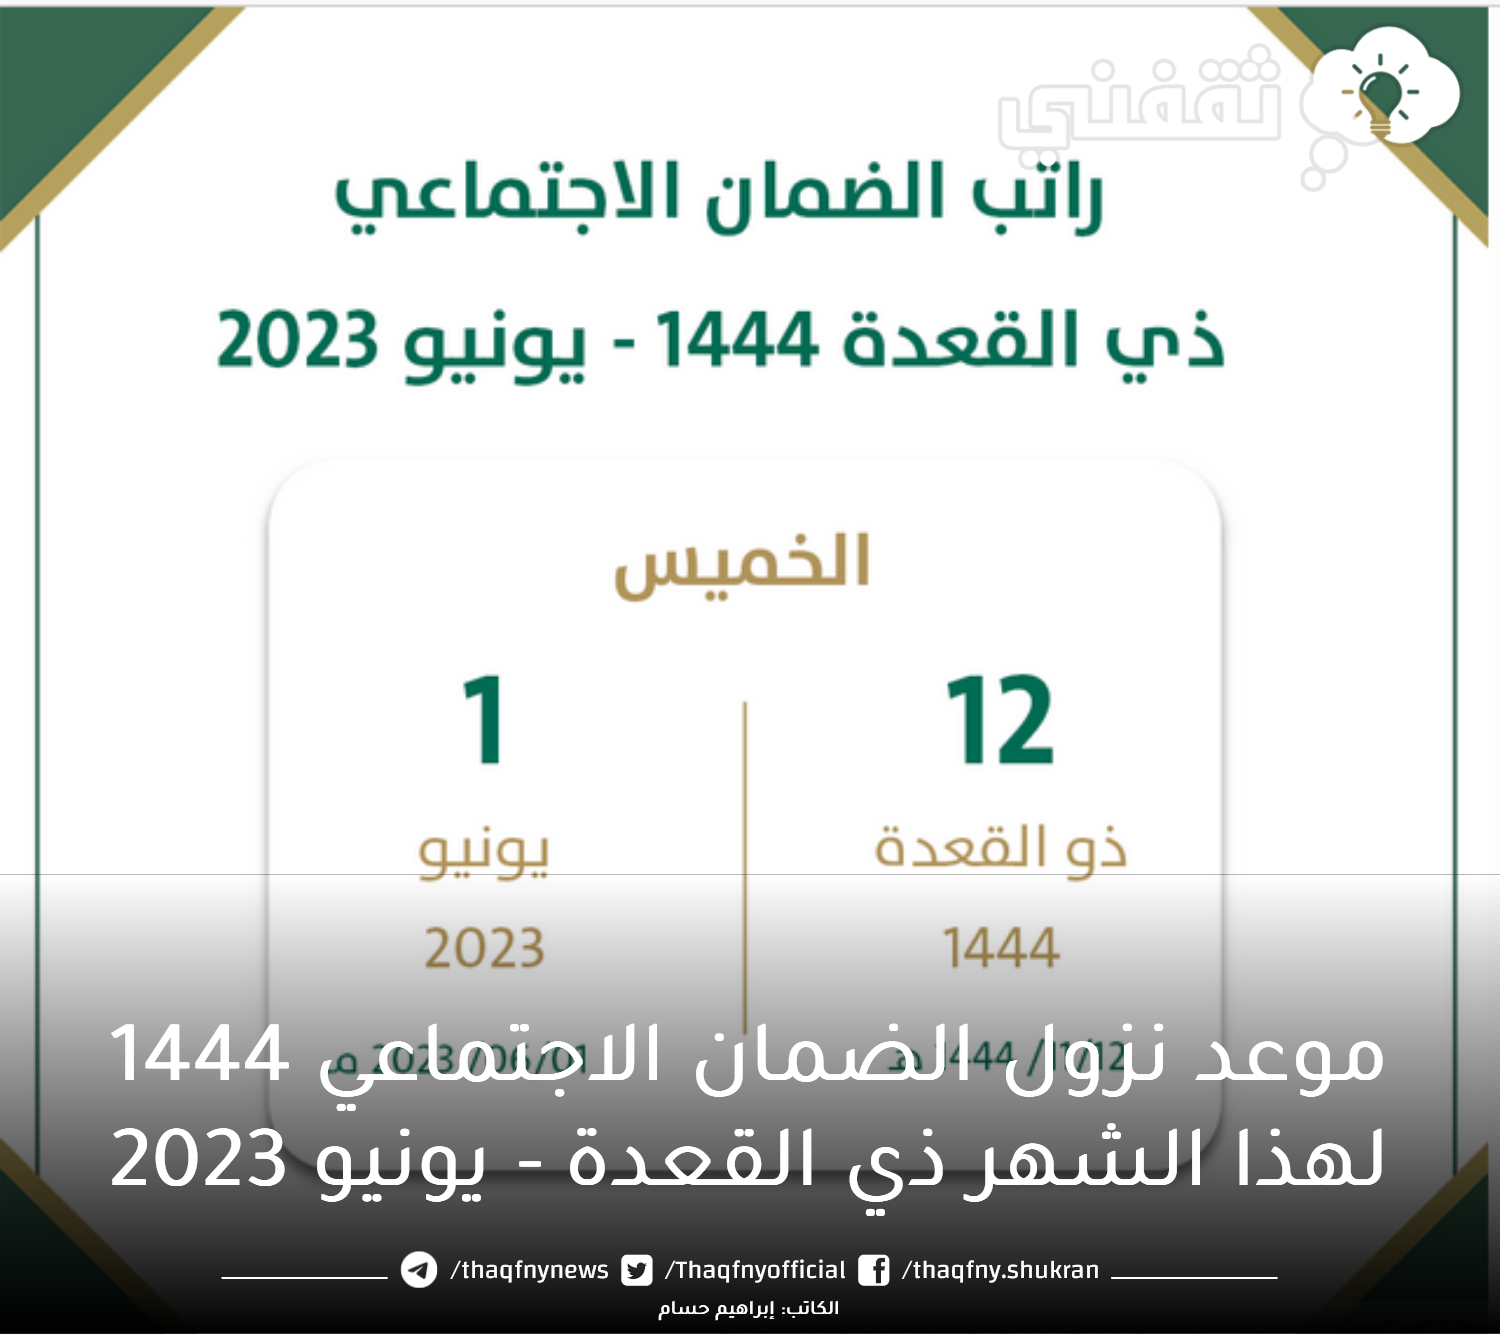 موعد نزول الضمان الاجتماعي 1444 لهذا الشهر ذي القعدة يونيو 2023 - مدونة التقنية العربية